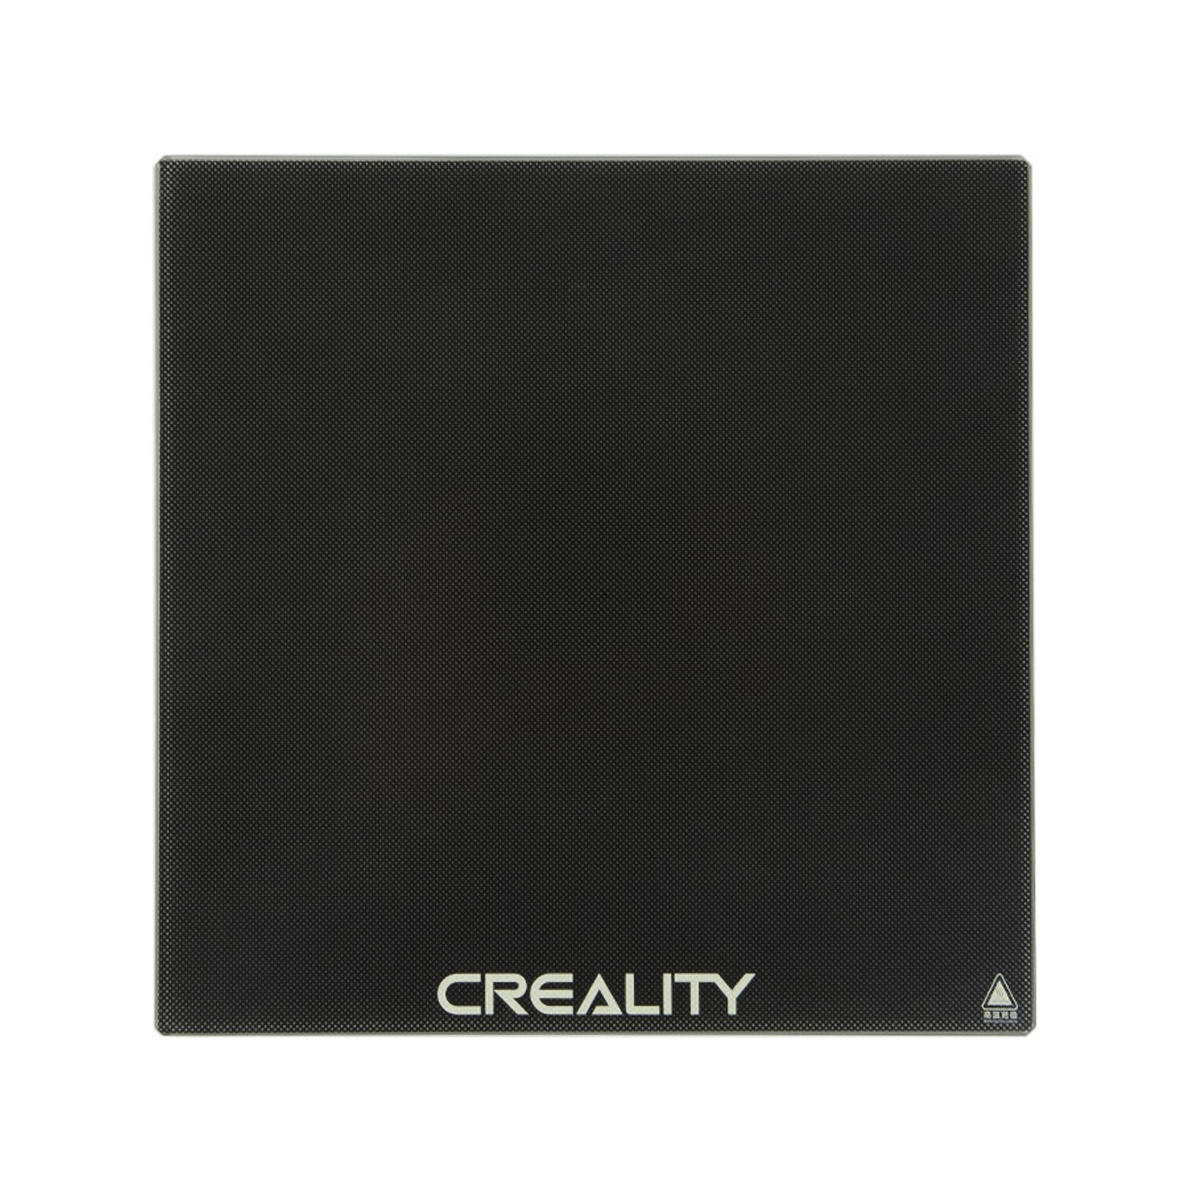 Скло Creality Ultrabase для 3D принтера Ender 3, Ender 3 Pro (Оригінал)